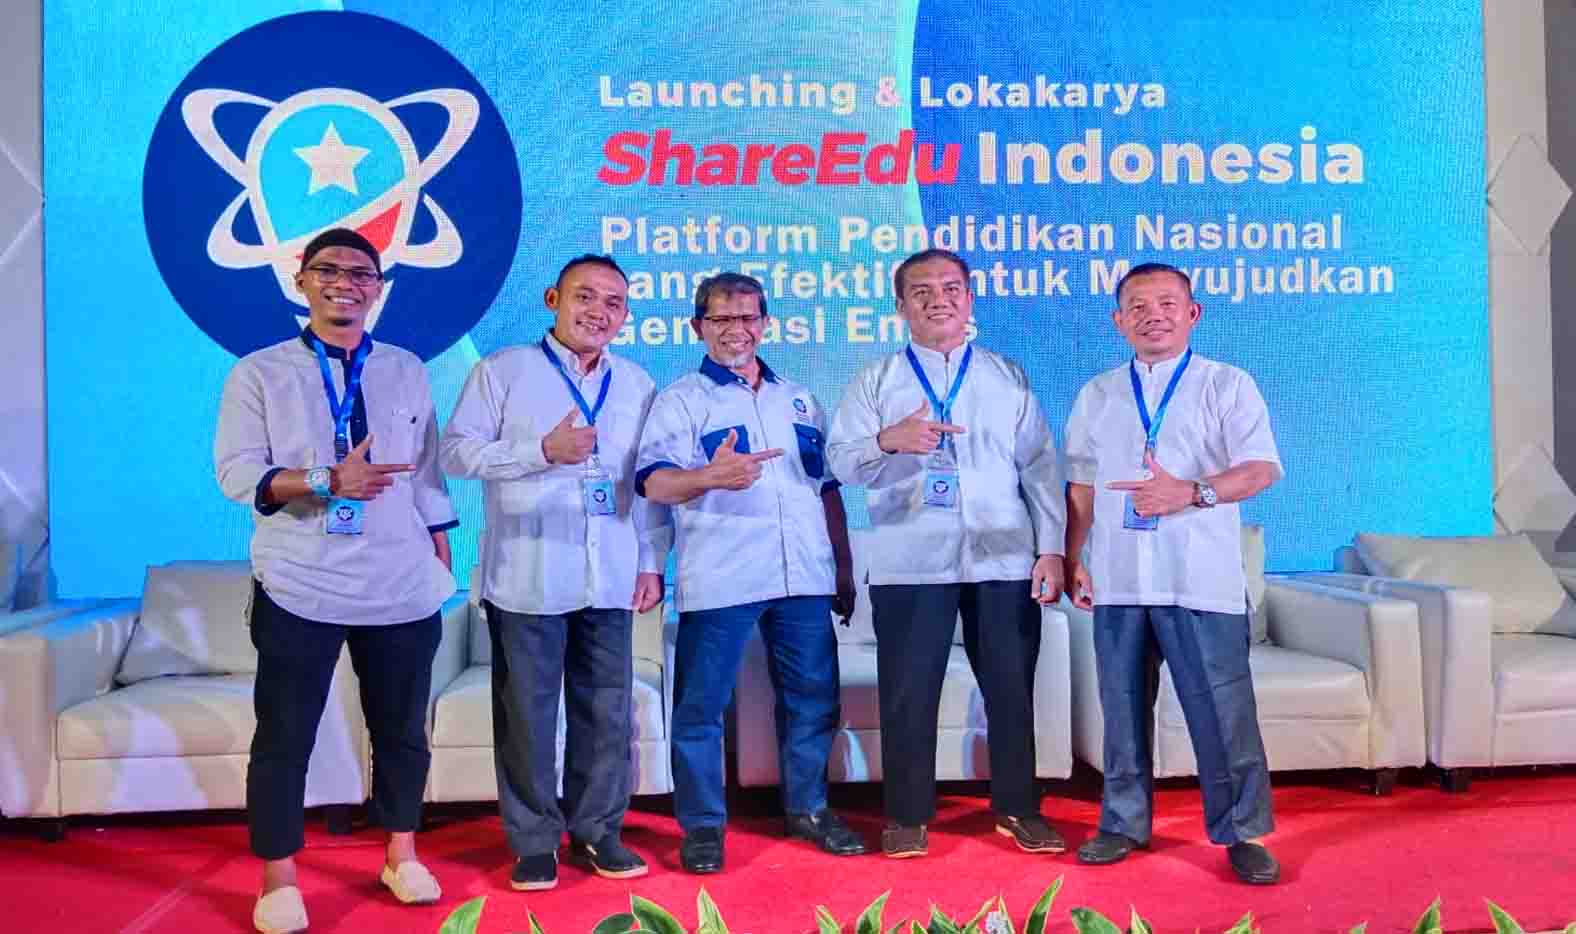 SMPS IT Darul Fikri Siapkan Generasi Emas Melalui Share Edu Indonesia 